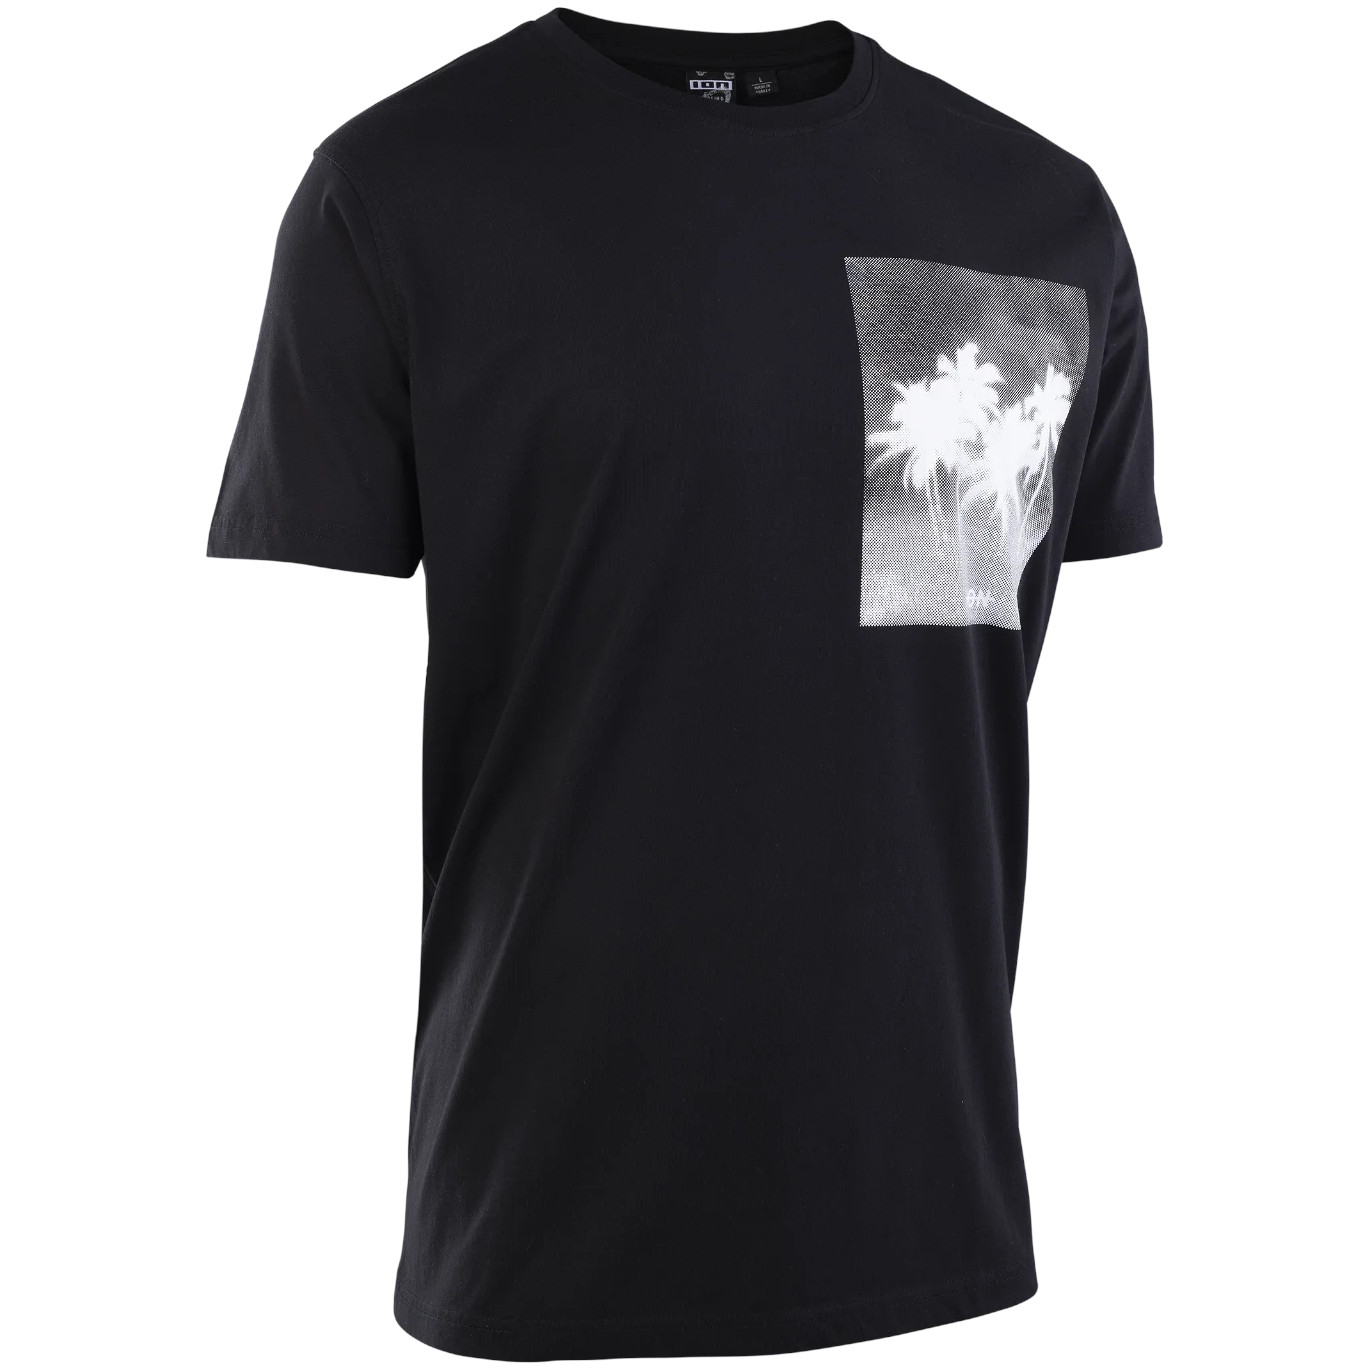 Produktbild von ION T-Shirt Graphic - schwarz